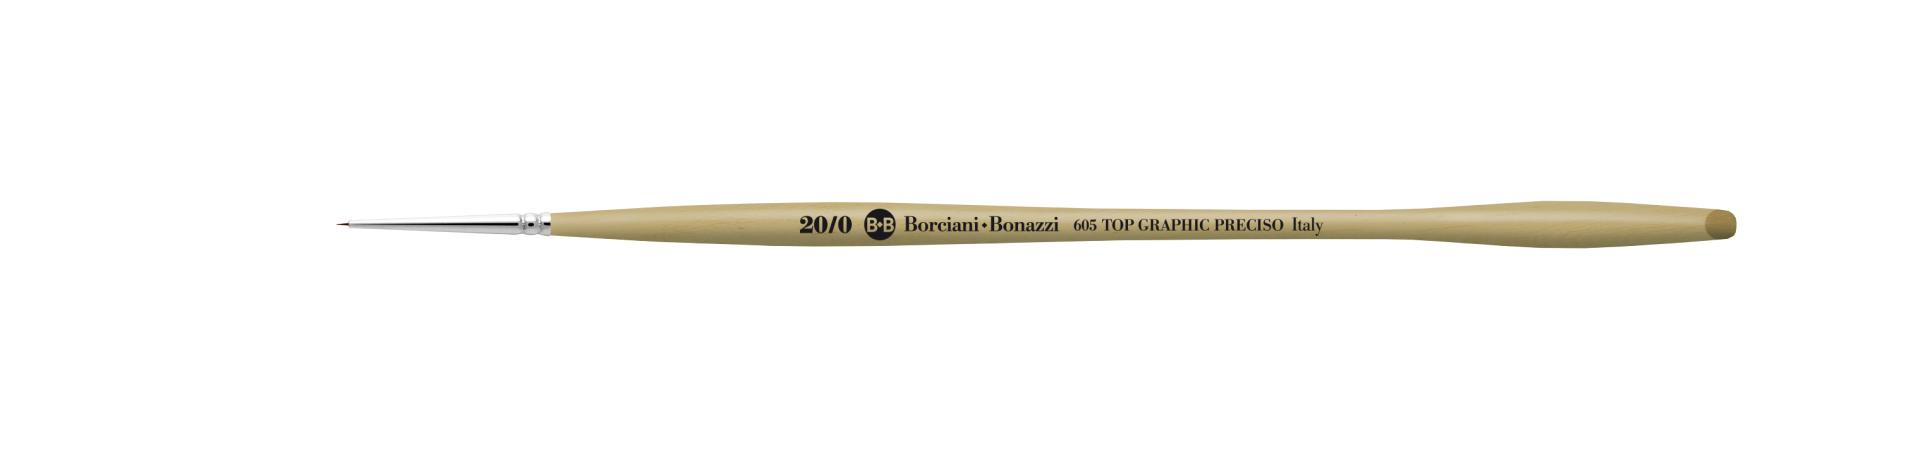 IL PRECISO Top Graphic series 605 brushes for miniatures - Borciani e Bonazzi